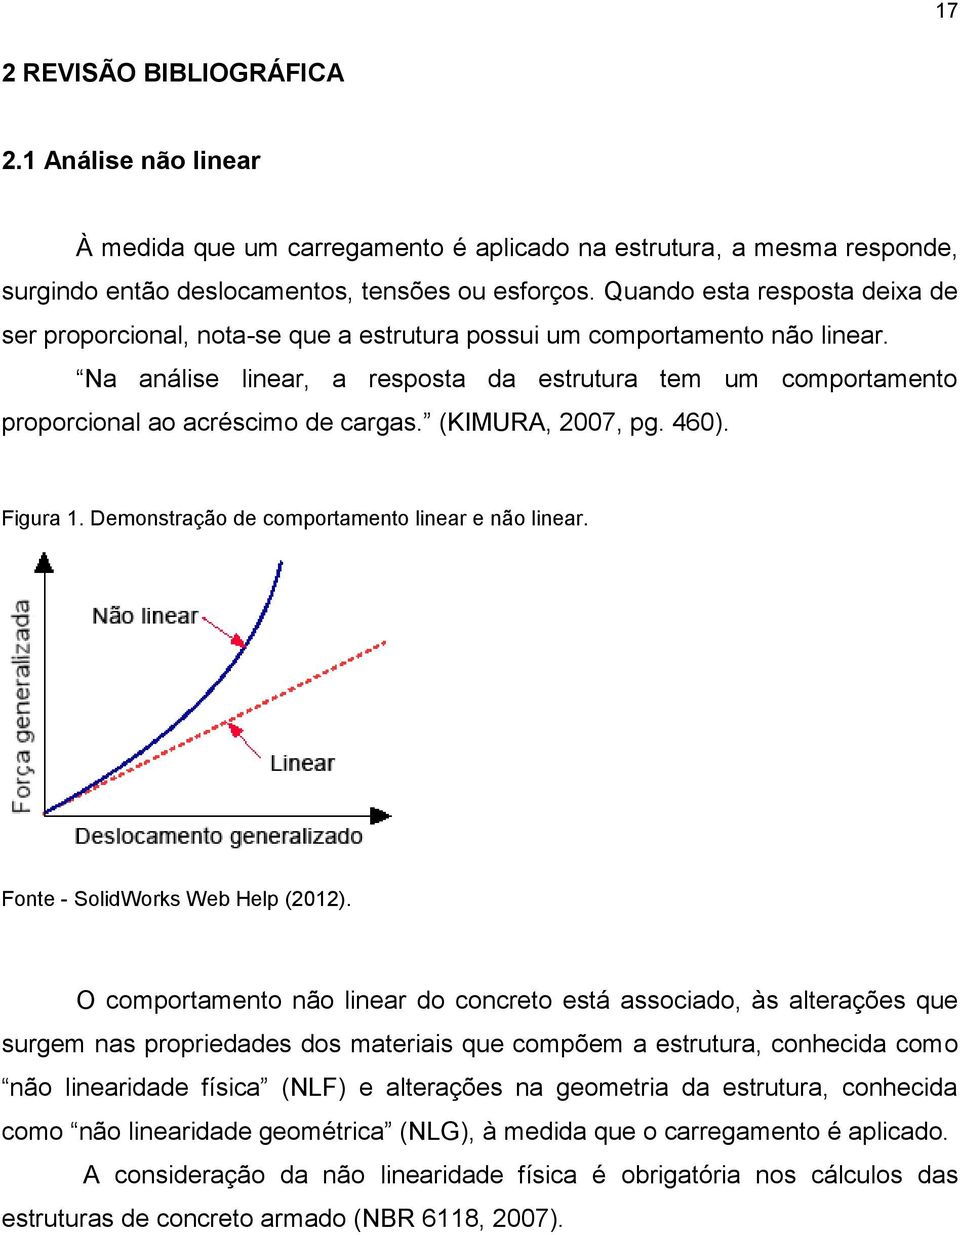 Na análise linear, a resposta da estrutura tem um comportamento proporcional ao acréscimo de cargas. (KIMURA, 2007, pg. 460). Figura 1. Demonstração de comportamento linear e não linear.